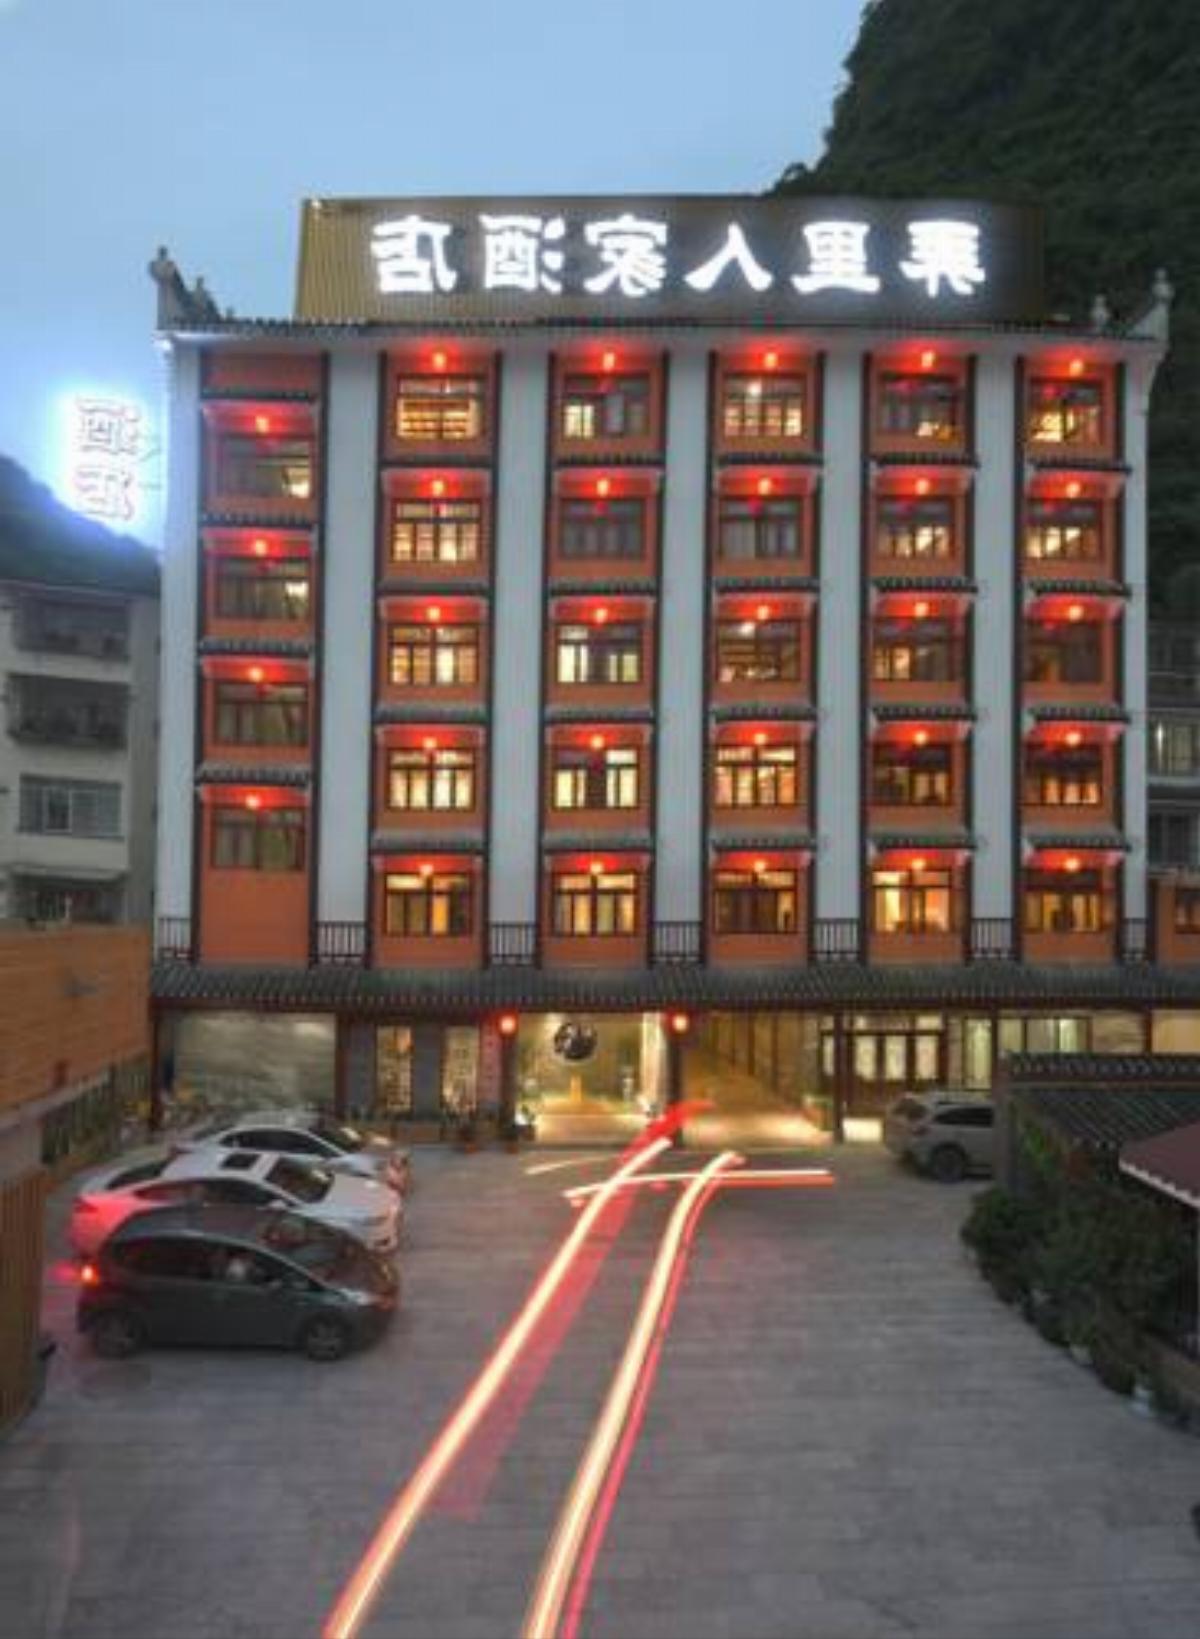 Alley Mountain View Garden Hotel Hotel Yangshuo China